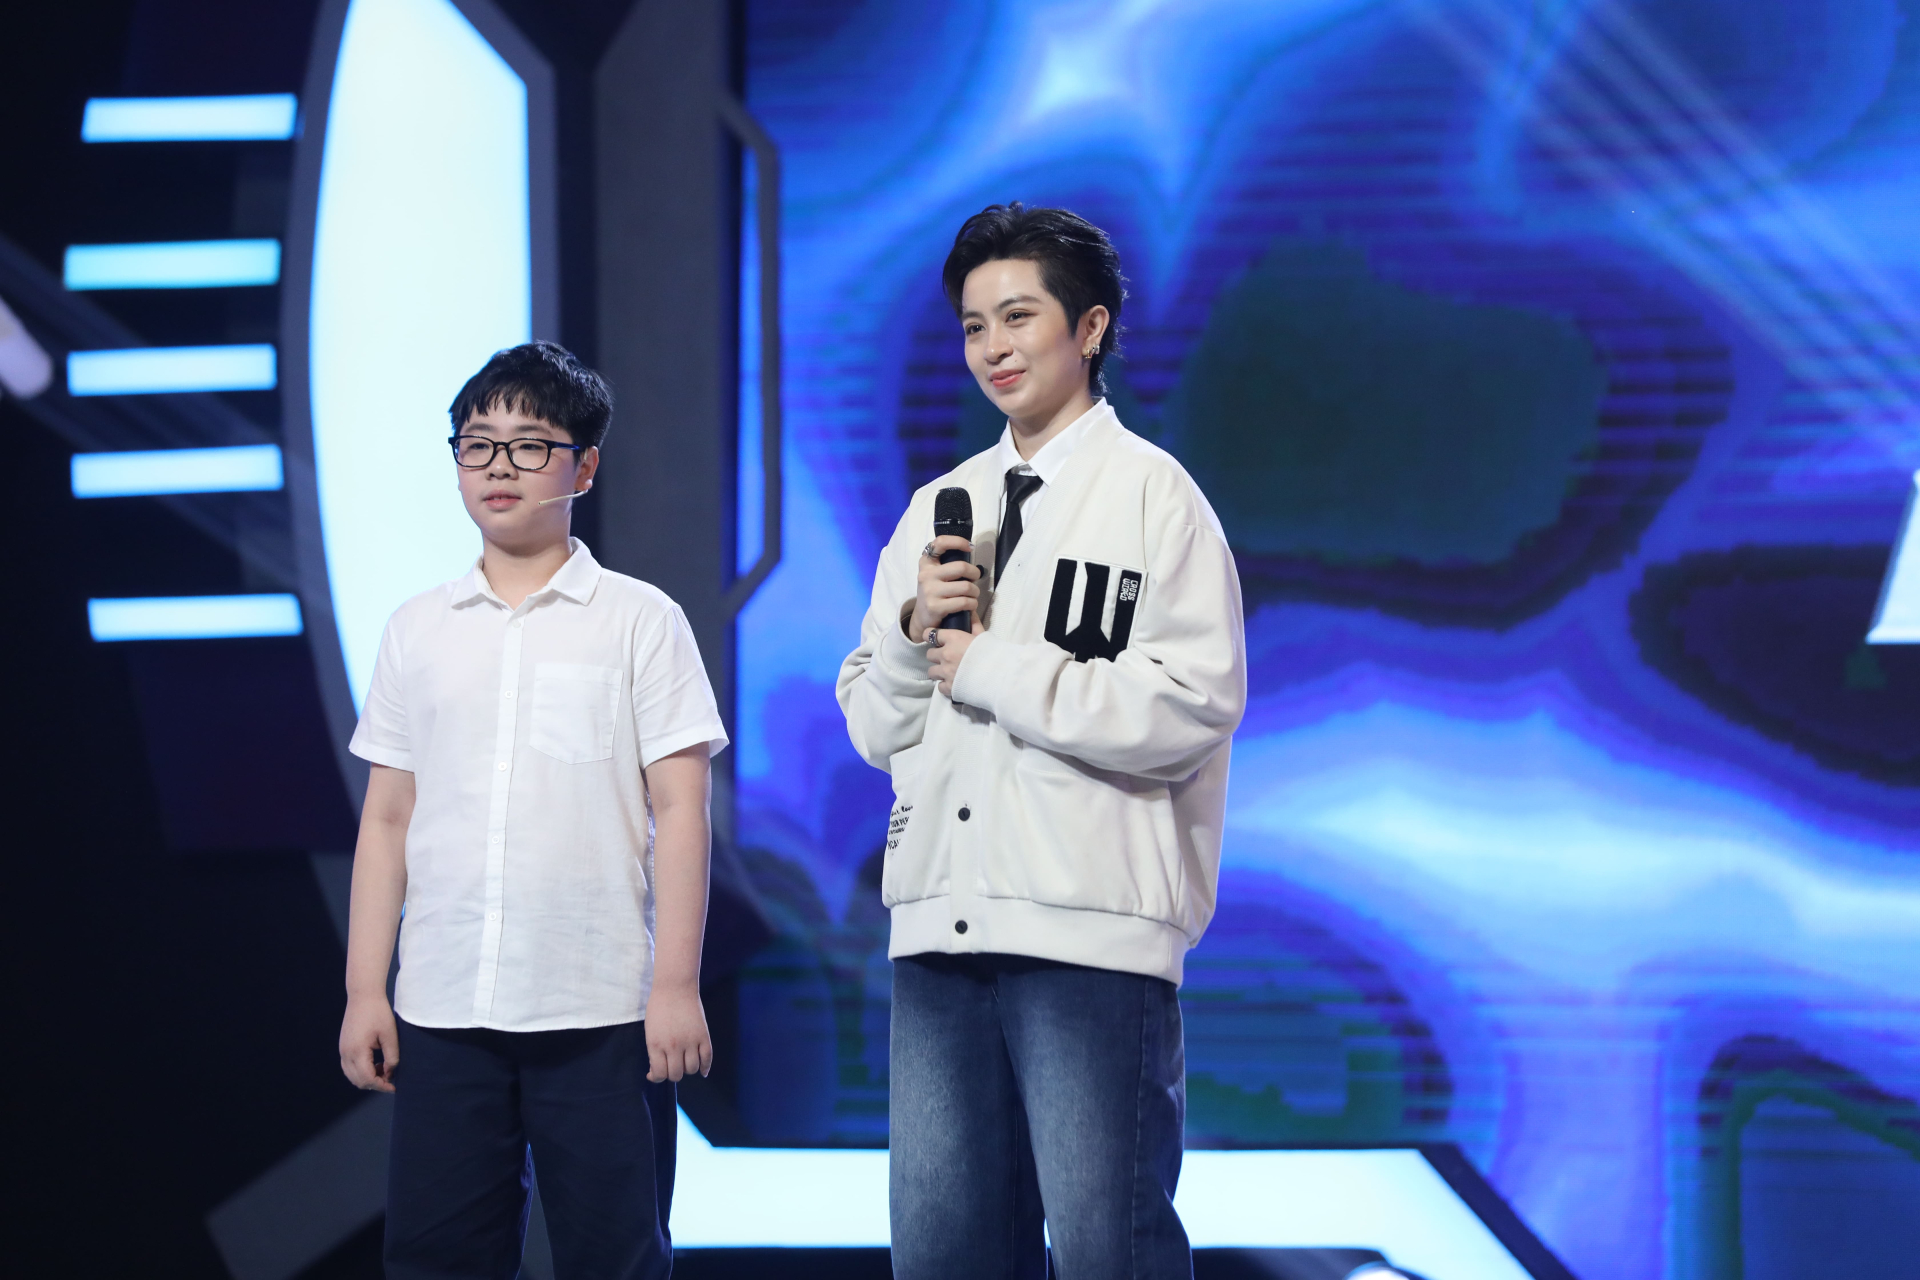 Tài năng nhí Nguyễn Lê Phú Kiên khiến khán giả và các khách mời ngưỡng mộ trước màn giao tiếp bằng tiếng Anh cực kỳ chuyên nghiệp của cậu bé.